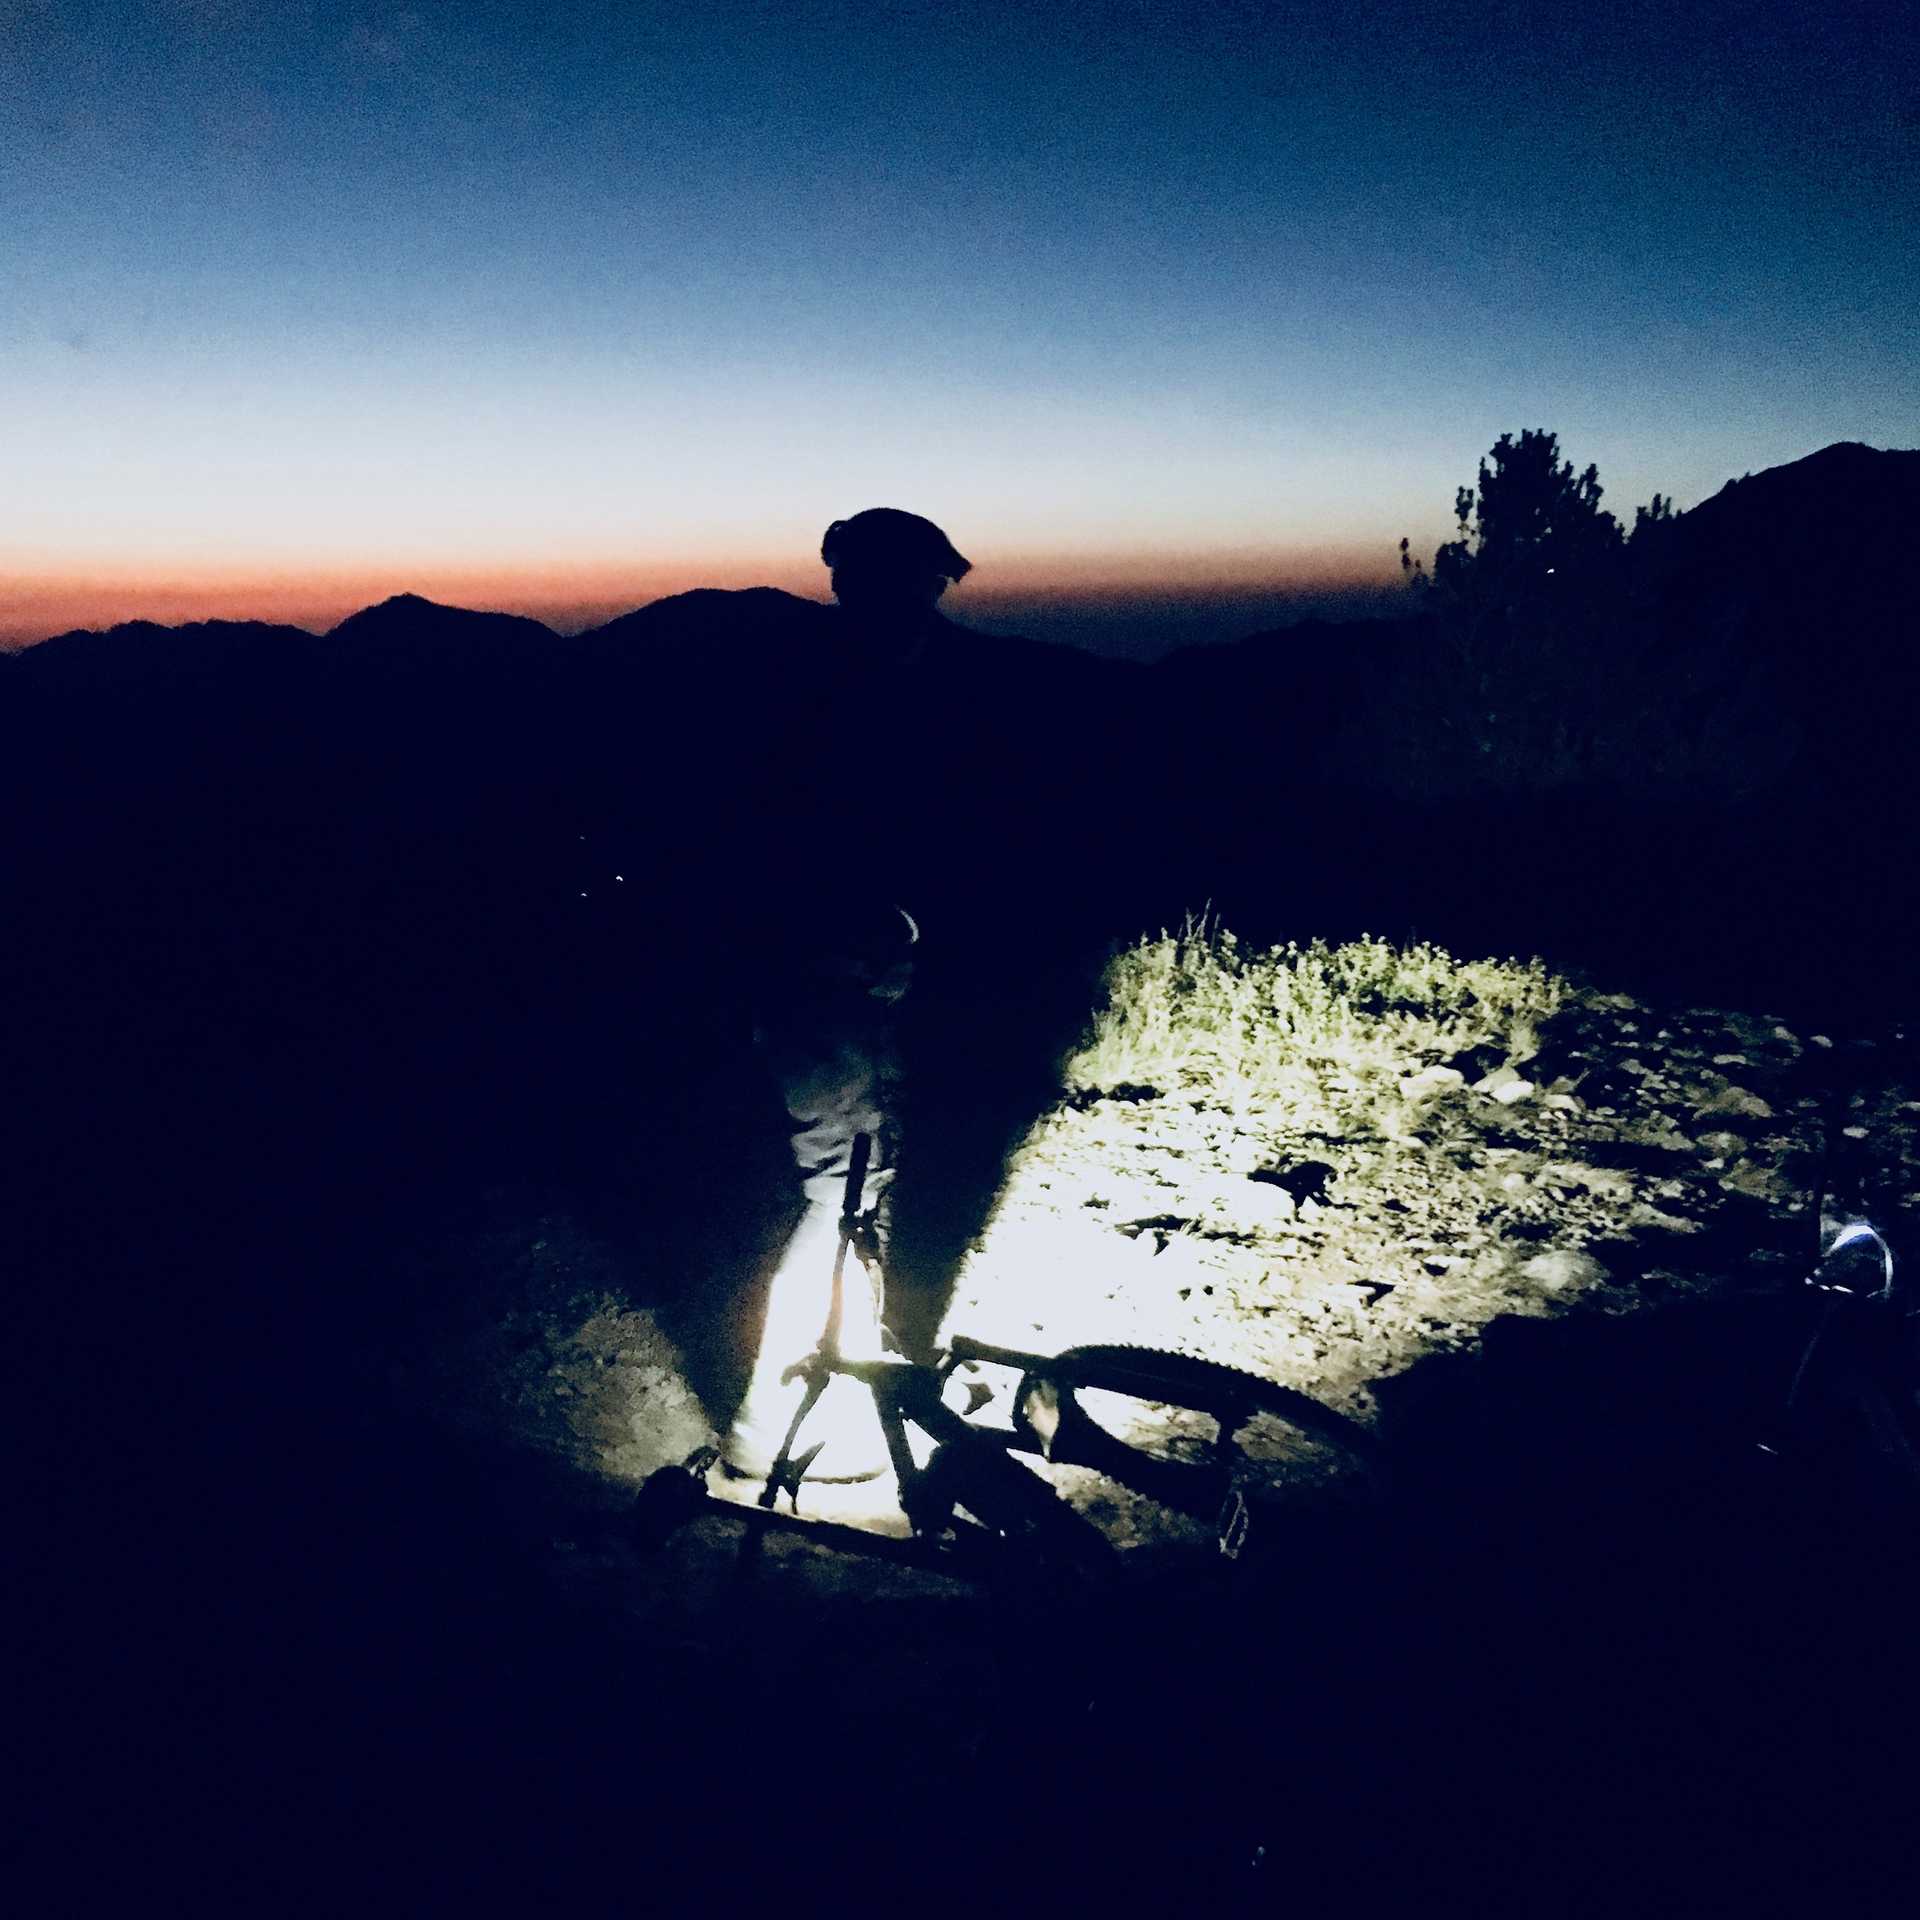 Biking the Wasatch Crest trail at night